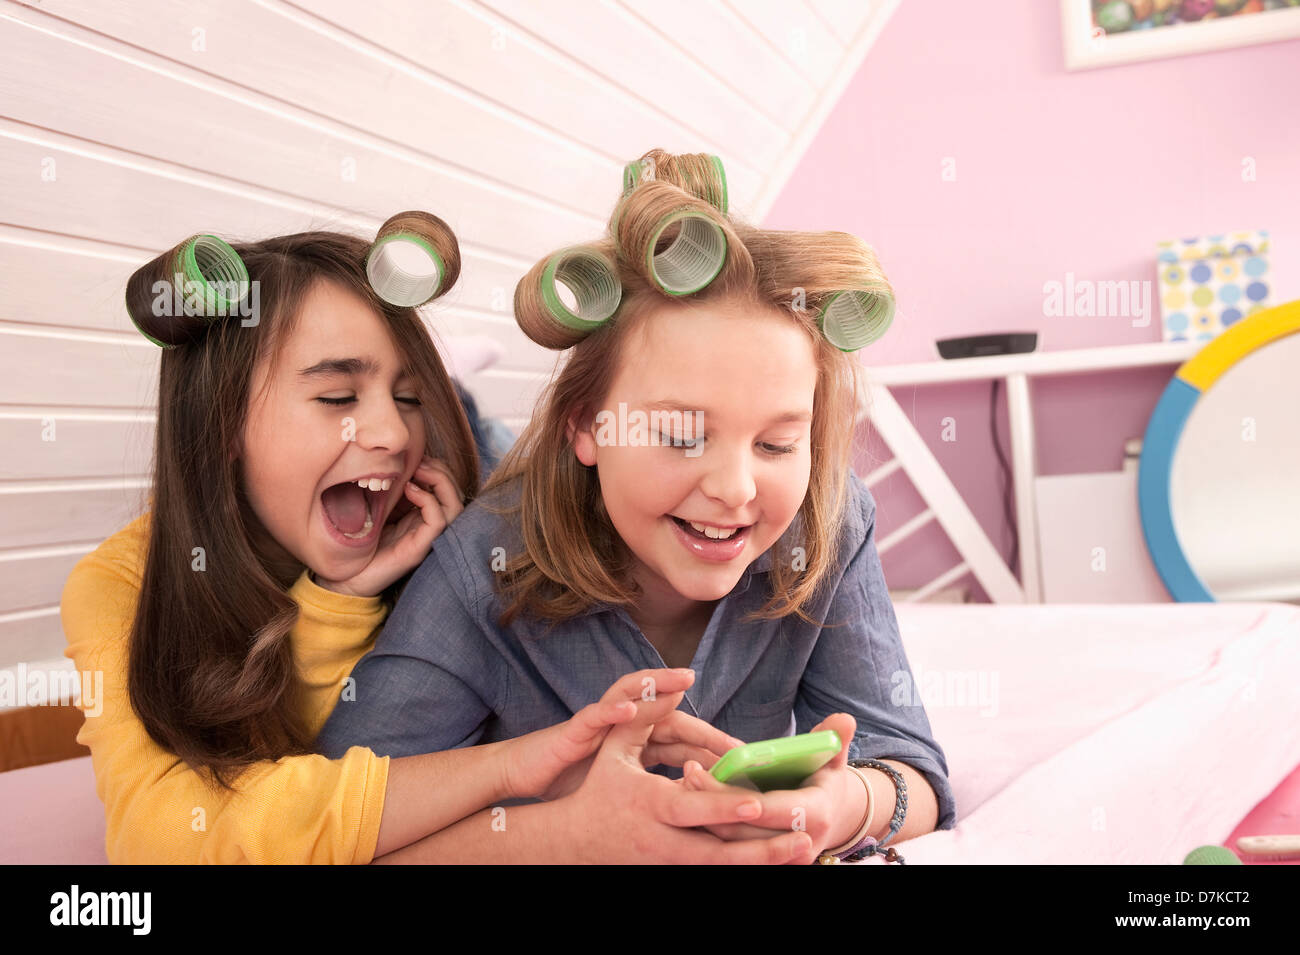 Mädchen mit Lockenwickler liegen und beobachtete Smartphone, Lächeln Stockfoto